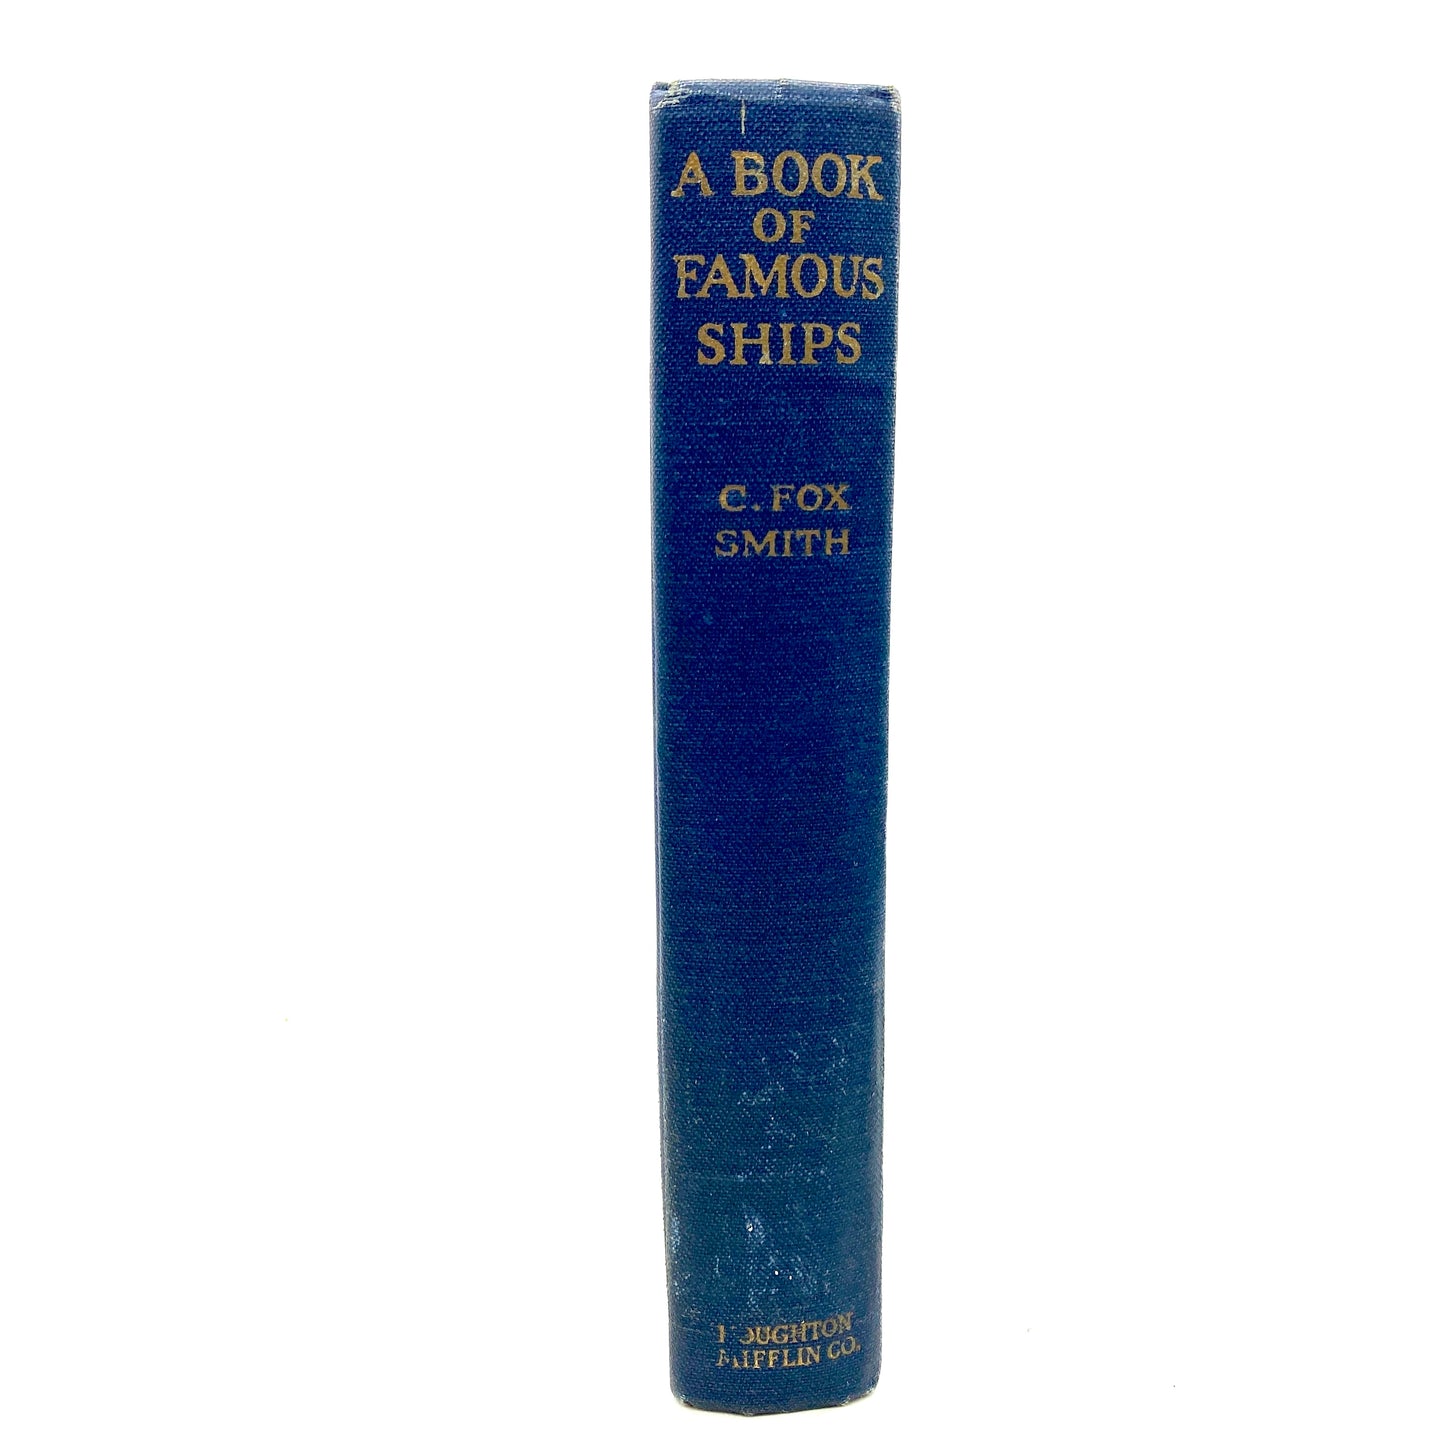 SMITH, C. Fox "A Book of Famous Ships" [Houghton Mifflin, 1924]